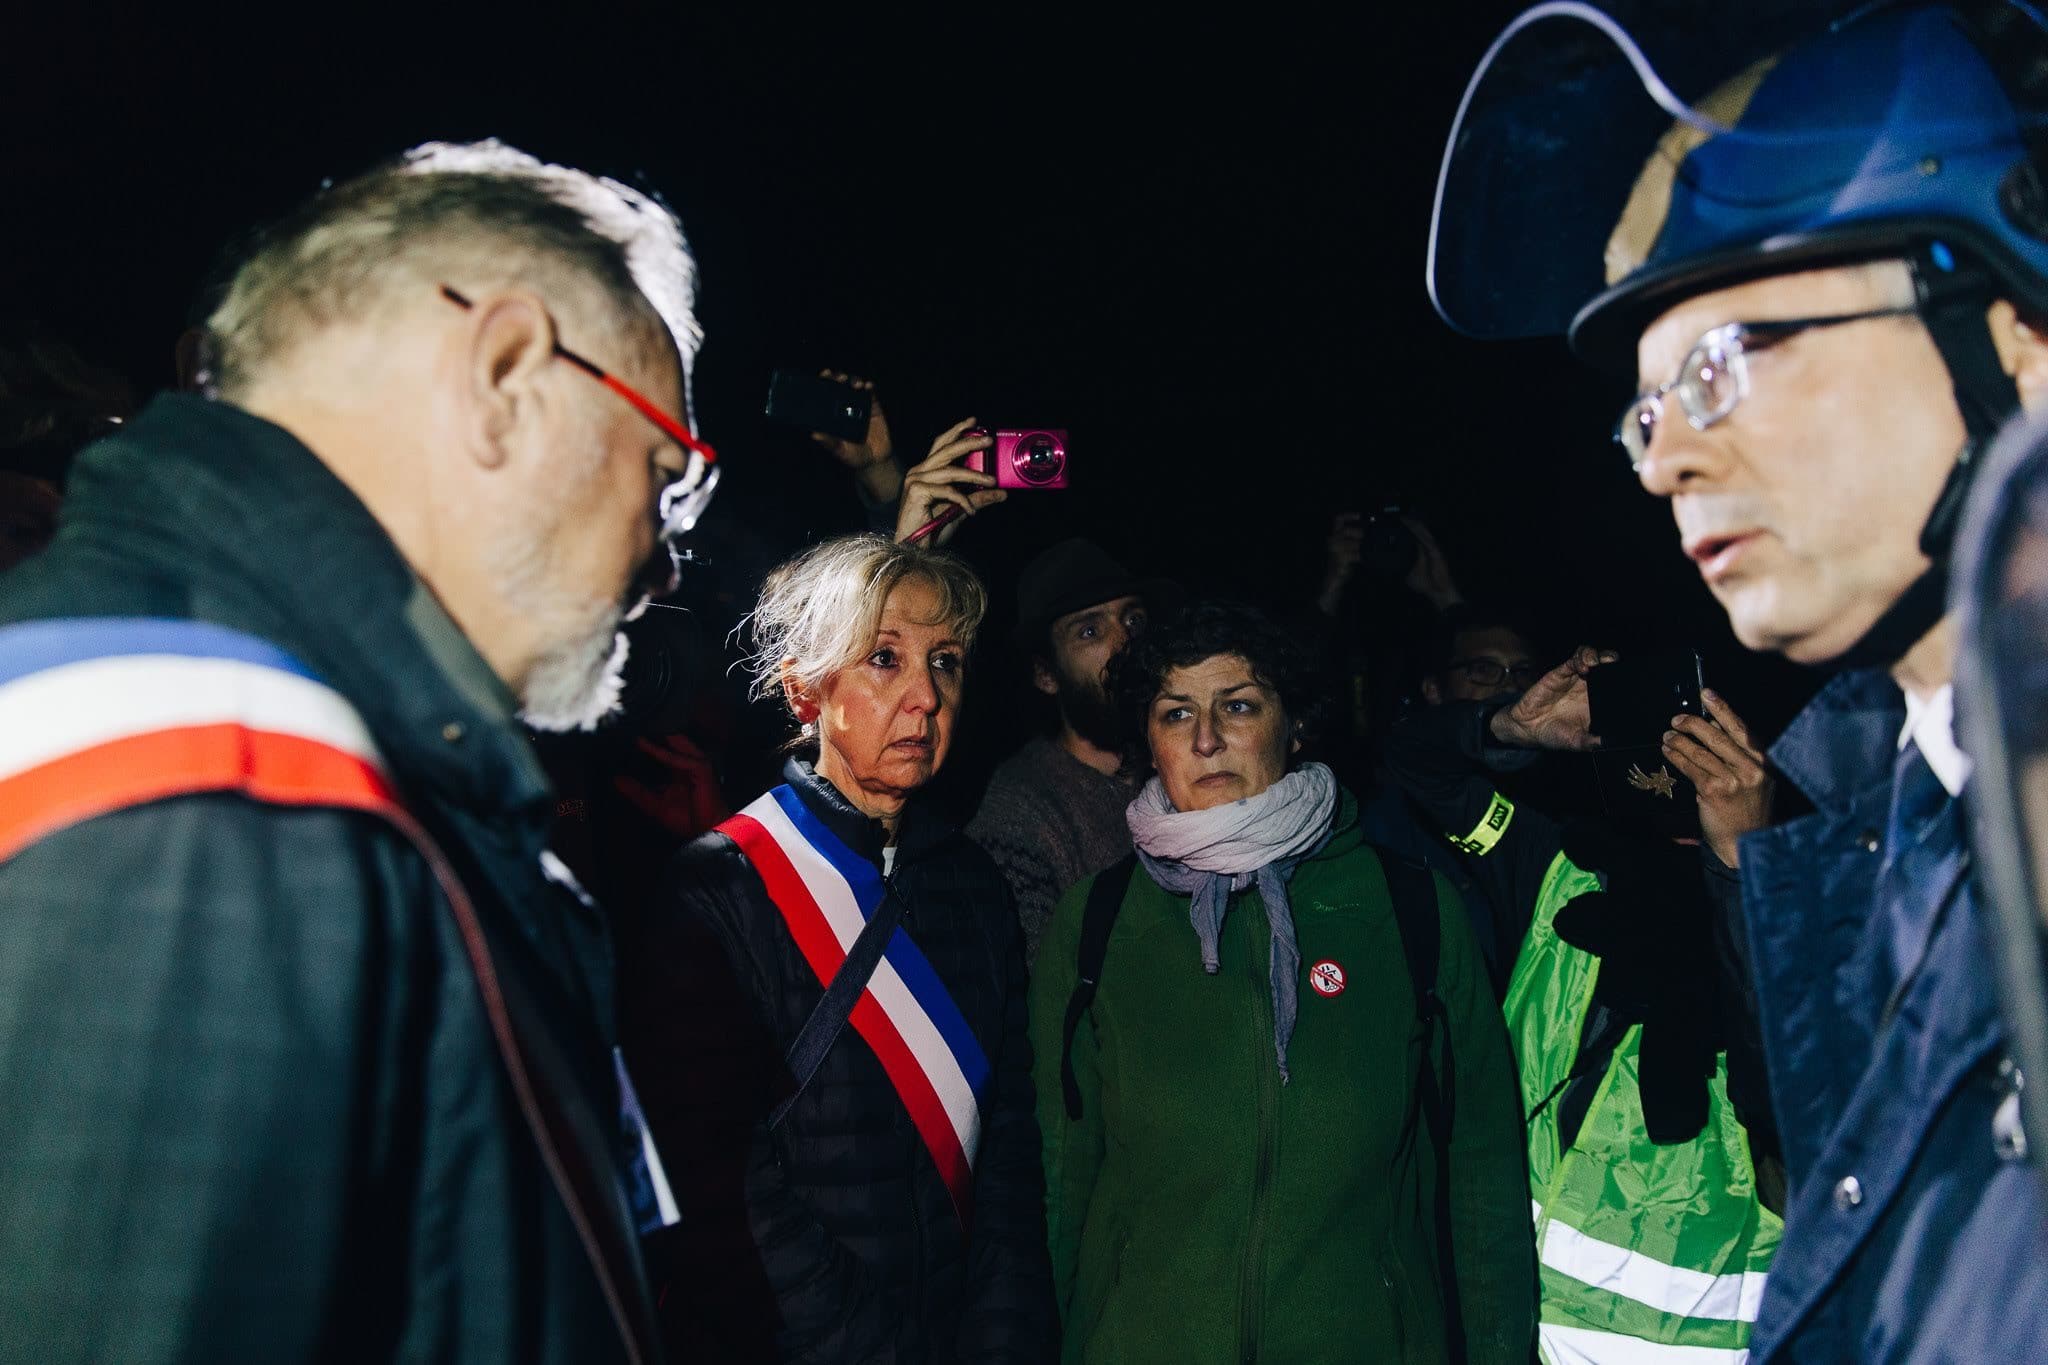 Les maires de Kolbsheim et Schiltigheim tentent, vainement, de négocier un arrêt de l'évacuation (Photo Abdeslam Mirdass)